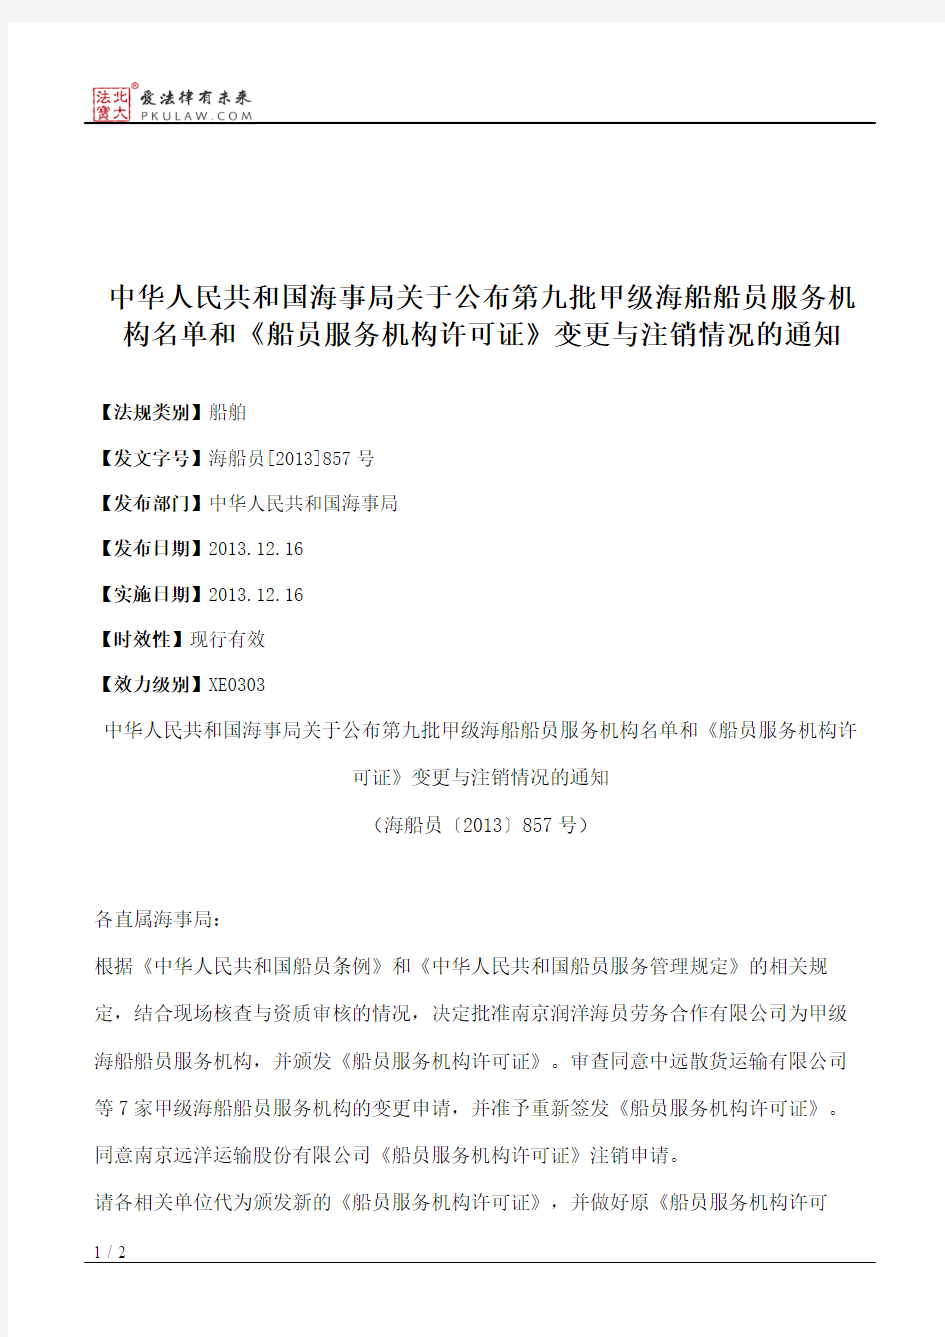 中华人民共和国海事局关于公布第九批甲级海船船员服务机构名单和